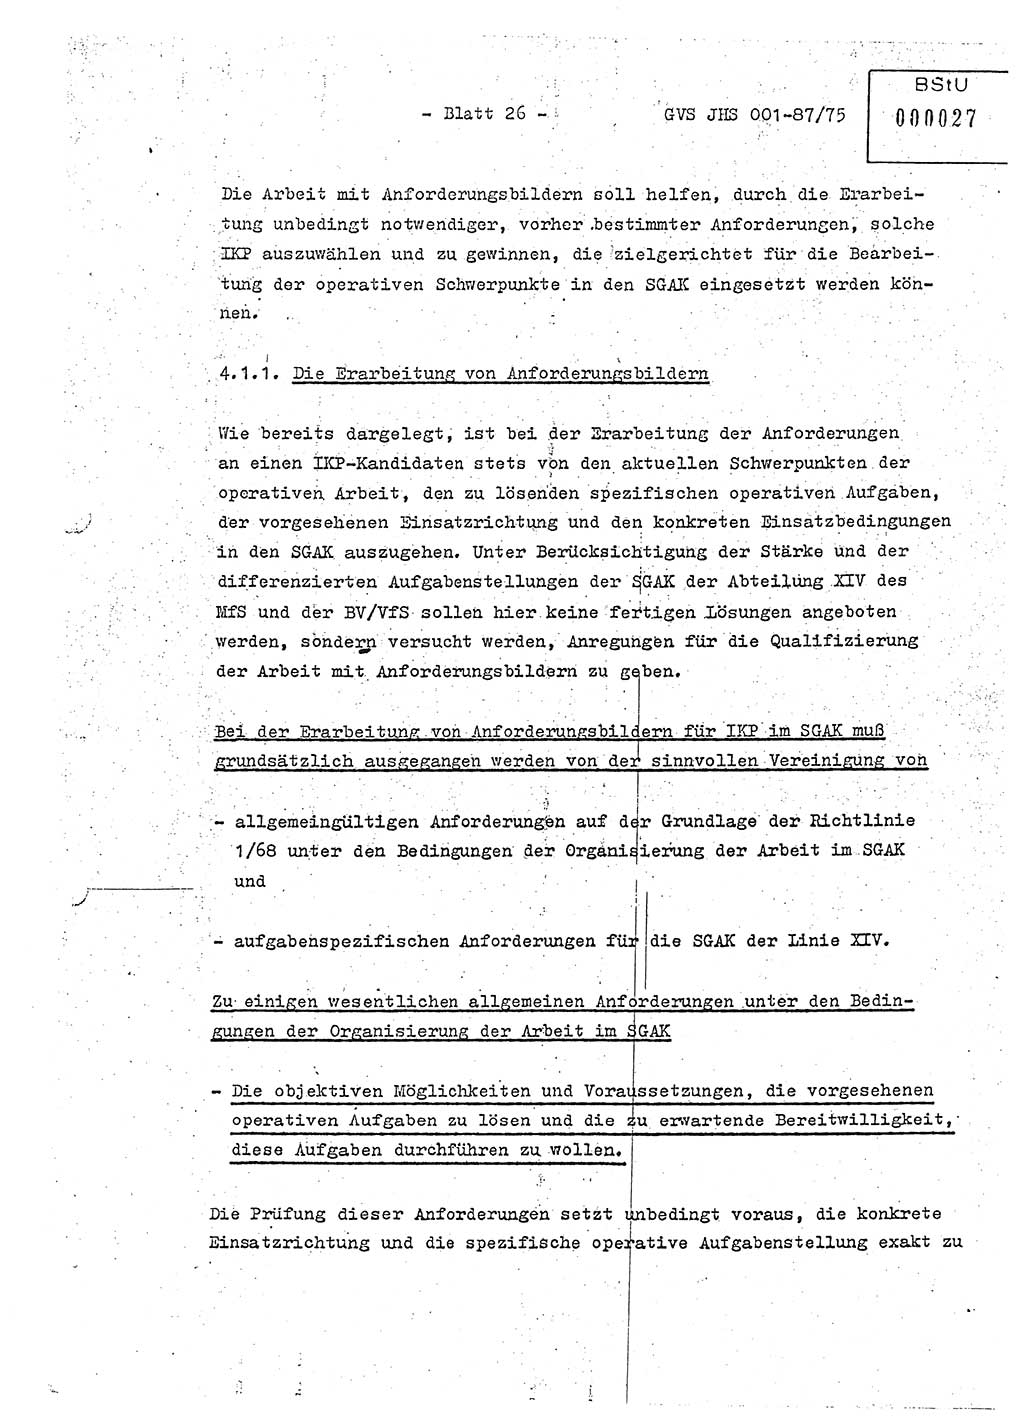 Diplomarbeit Hauptmann Volkmar Heinz (Abt. ⅩⅣ), Oberleutnant Lothar Rüdiger (BV Lpz. Abt. Ⅺ), Ministerium für Staatssicherheit (MfS) [Deutsche Demokratische Republik (DDR)], Juristische Hochschule (JHS), Geheime Verschlußsache (GVS) o001-87/75, Potsdam 1975, Seite 26 (Dipl.-Arb. MfS DDR JHS GVS o001-87/75 1975, S. 26)